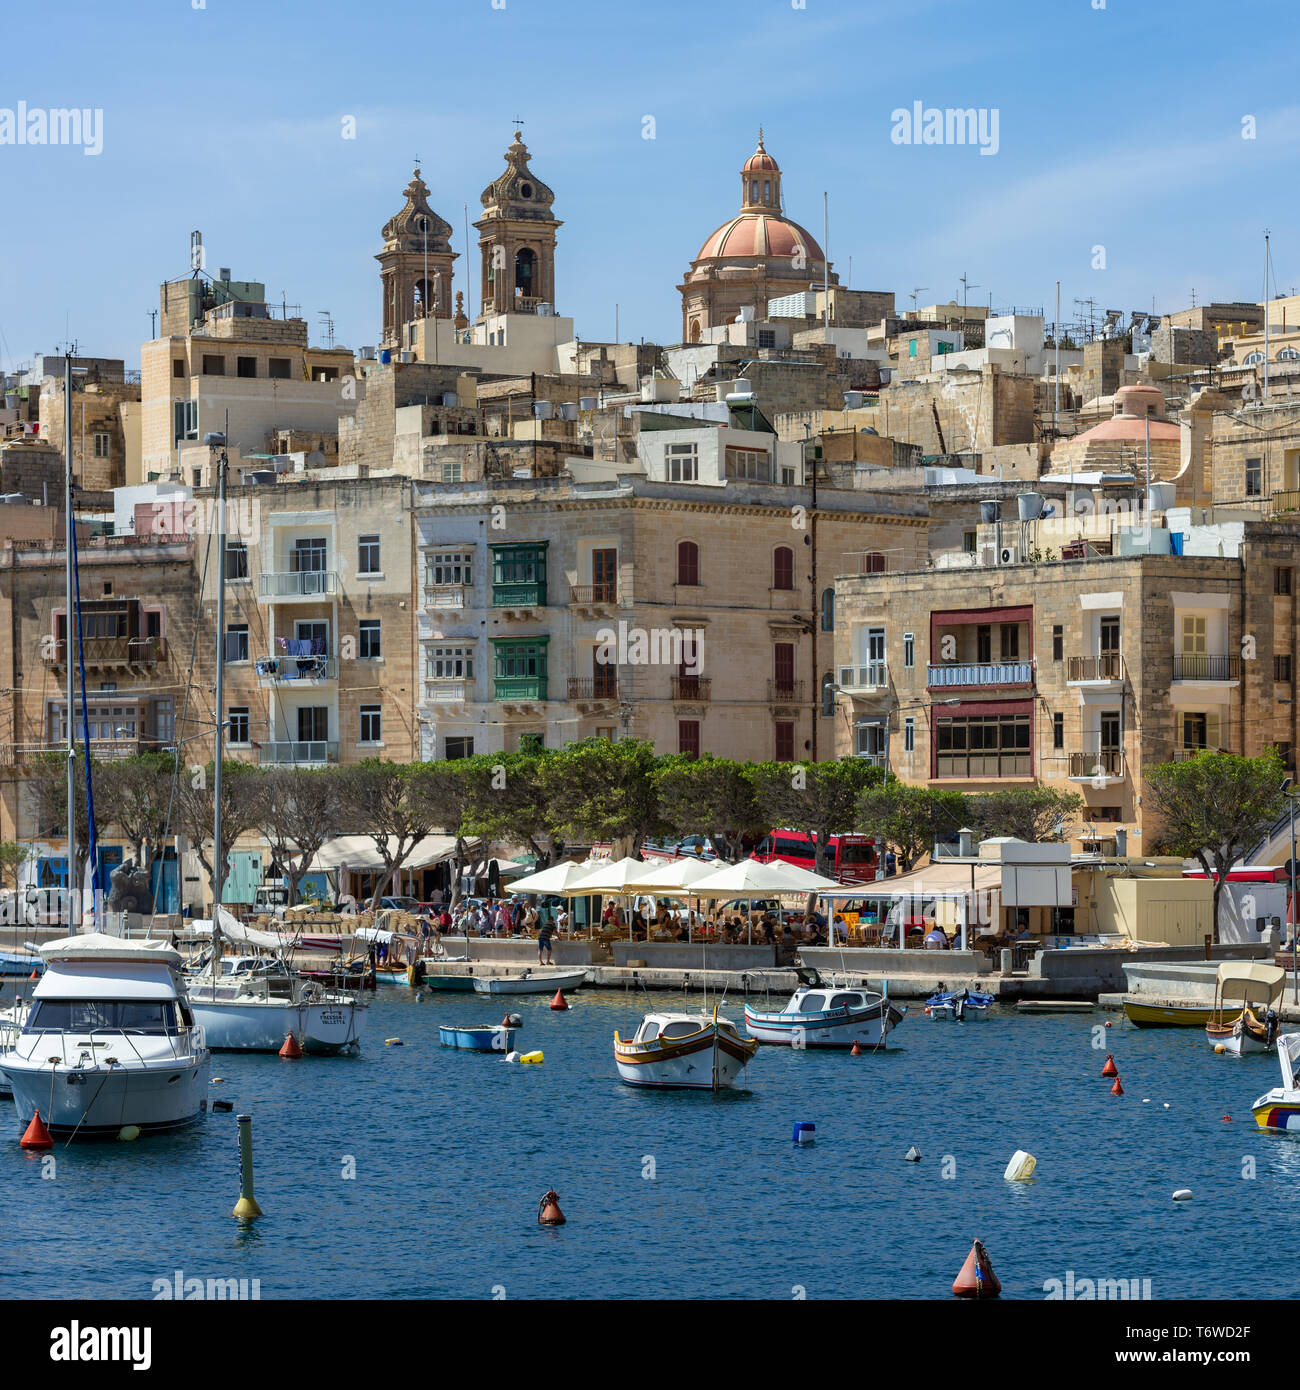 Die baumgesäumte Uferpromenade von Senglea in Malta mit ihren historischen Kalksteingebäuden, die zu den zwei Glockentürmen und der Kuppel der Senglea-Basilika führen Stockfoto